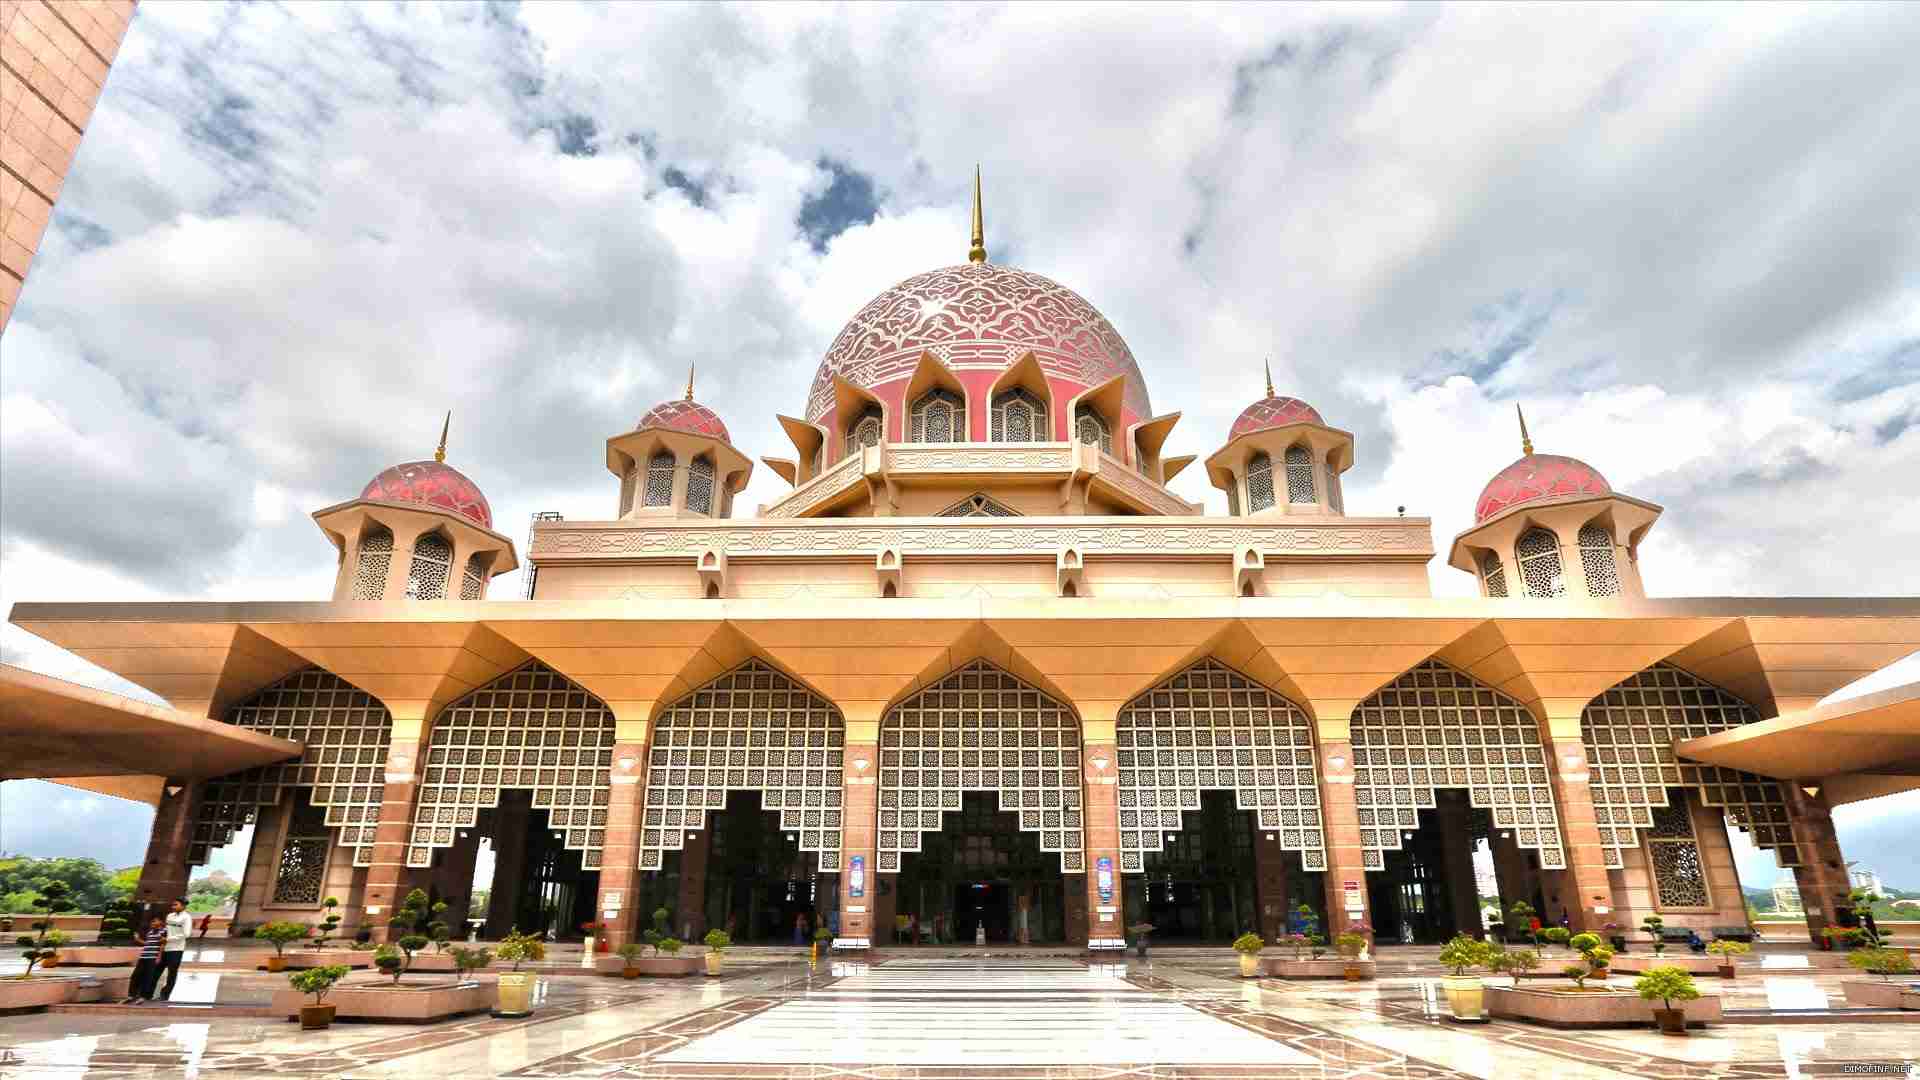 مسجد بوتراجايا ماليزياصاحب قبه زهرية اخاذة